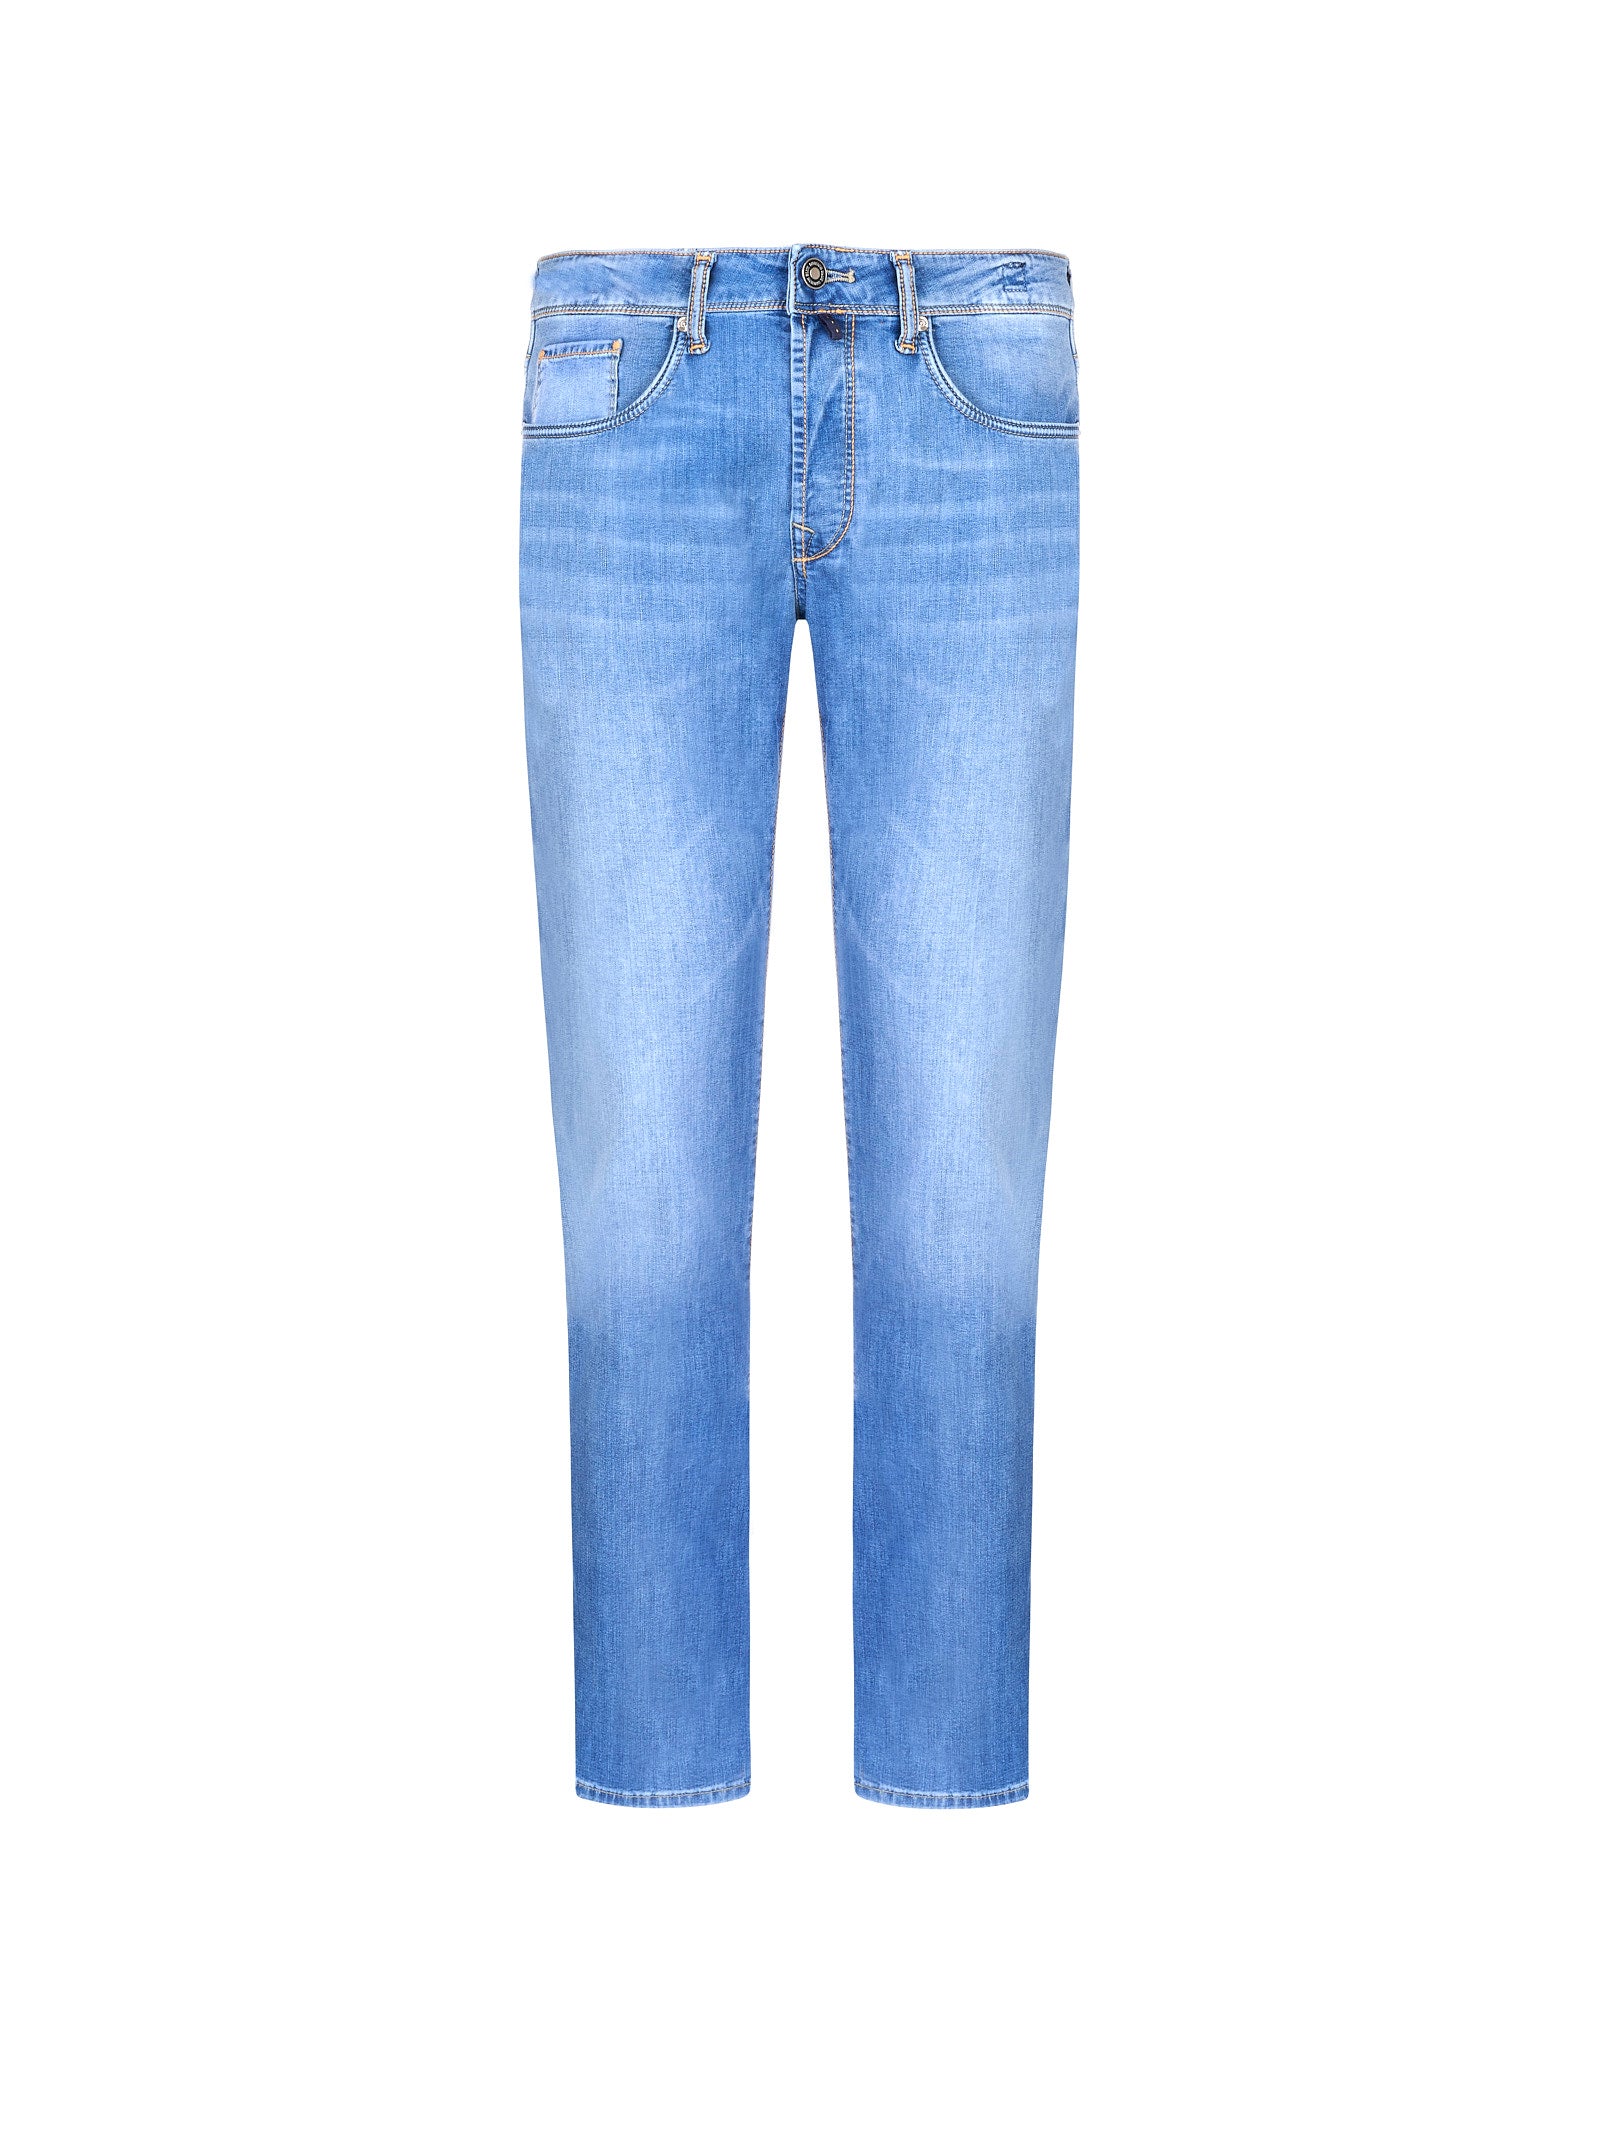 Jeans INCOTEX
Denim